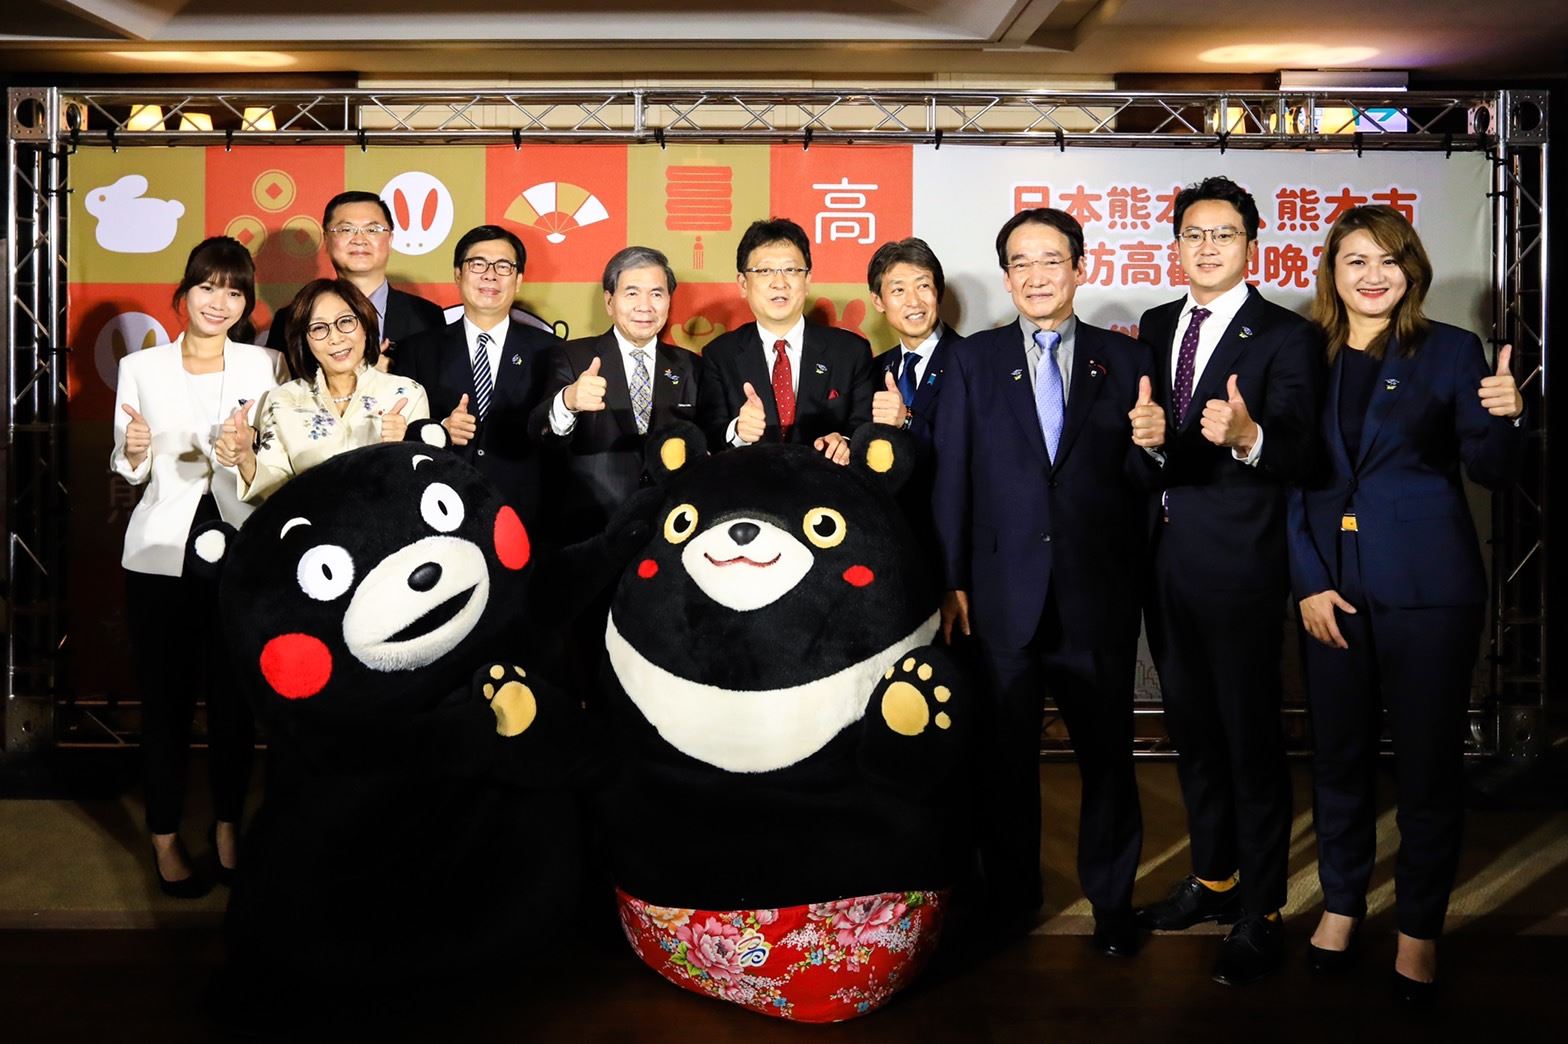 高雄市府會聯合歡迎熊本縣市訪高共商產業合作 吉祥物雙熊尬舞慶友誼